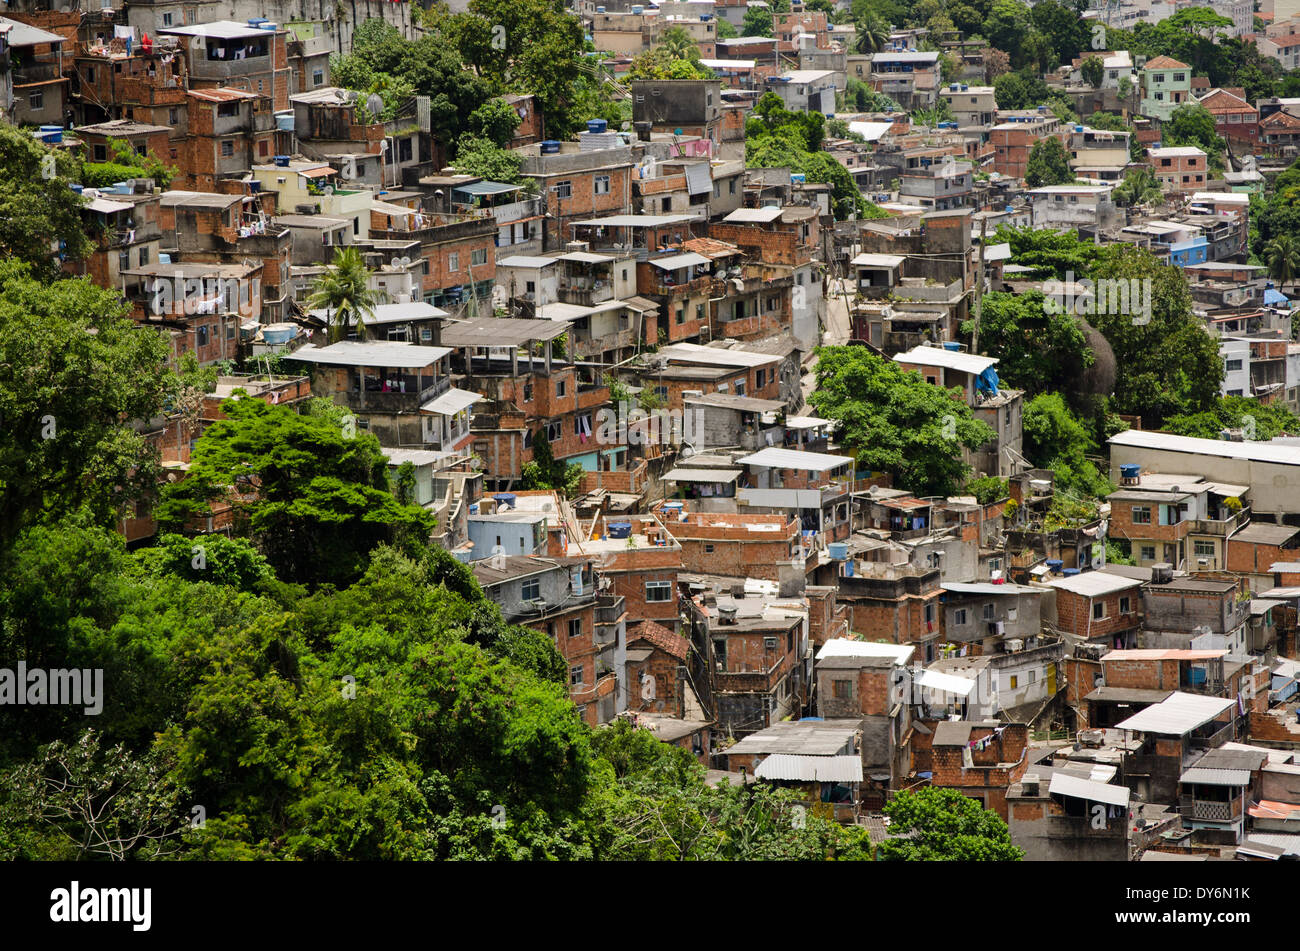 Favela Rocinha, Rio de Janeiro, Brazil Stock Photo